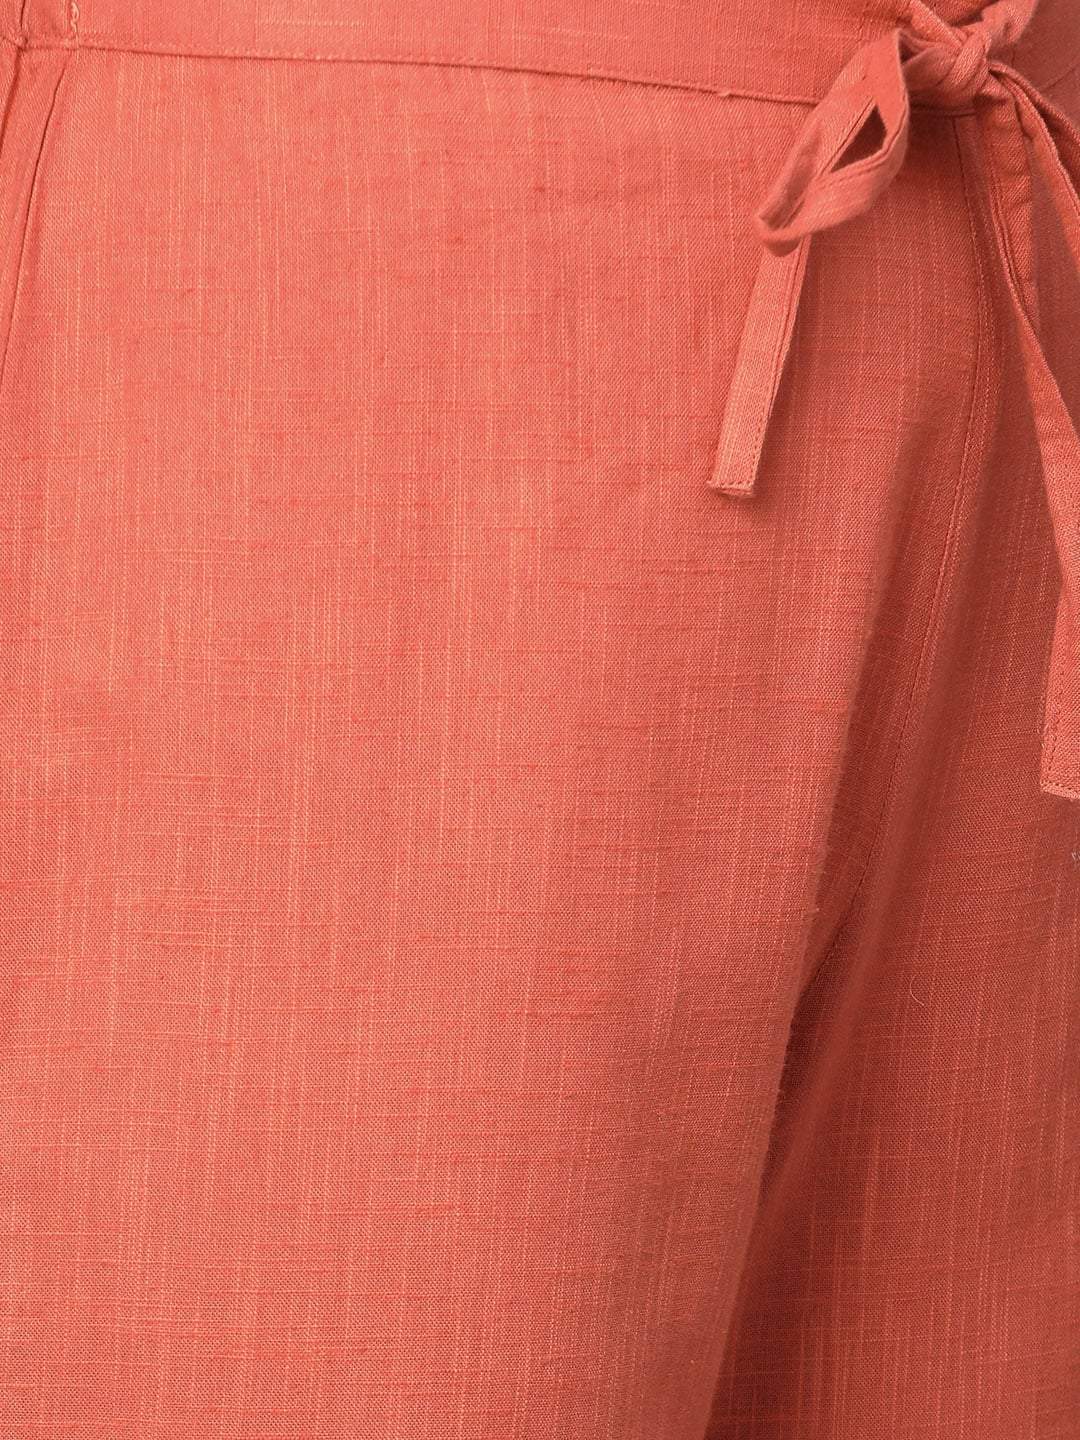 Women's  Off-White & Rust Orange Printed Kurta with Palazzos - AKS